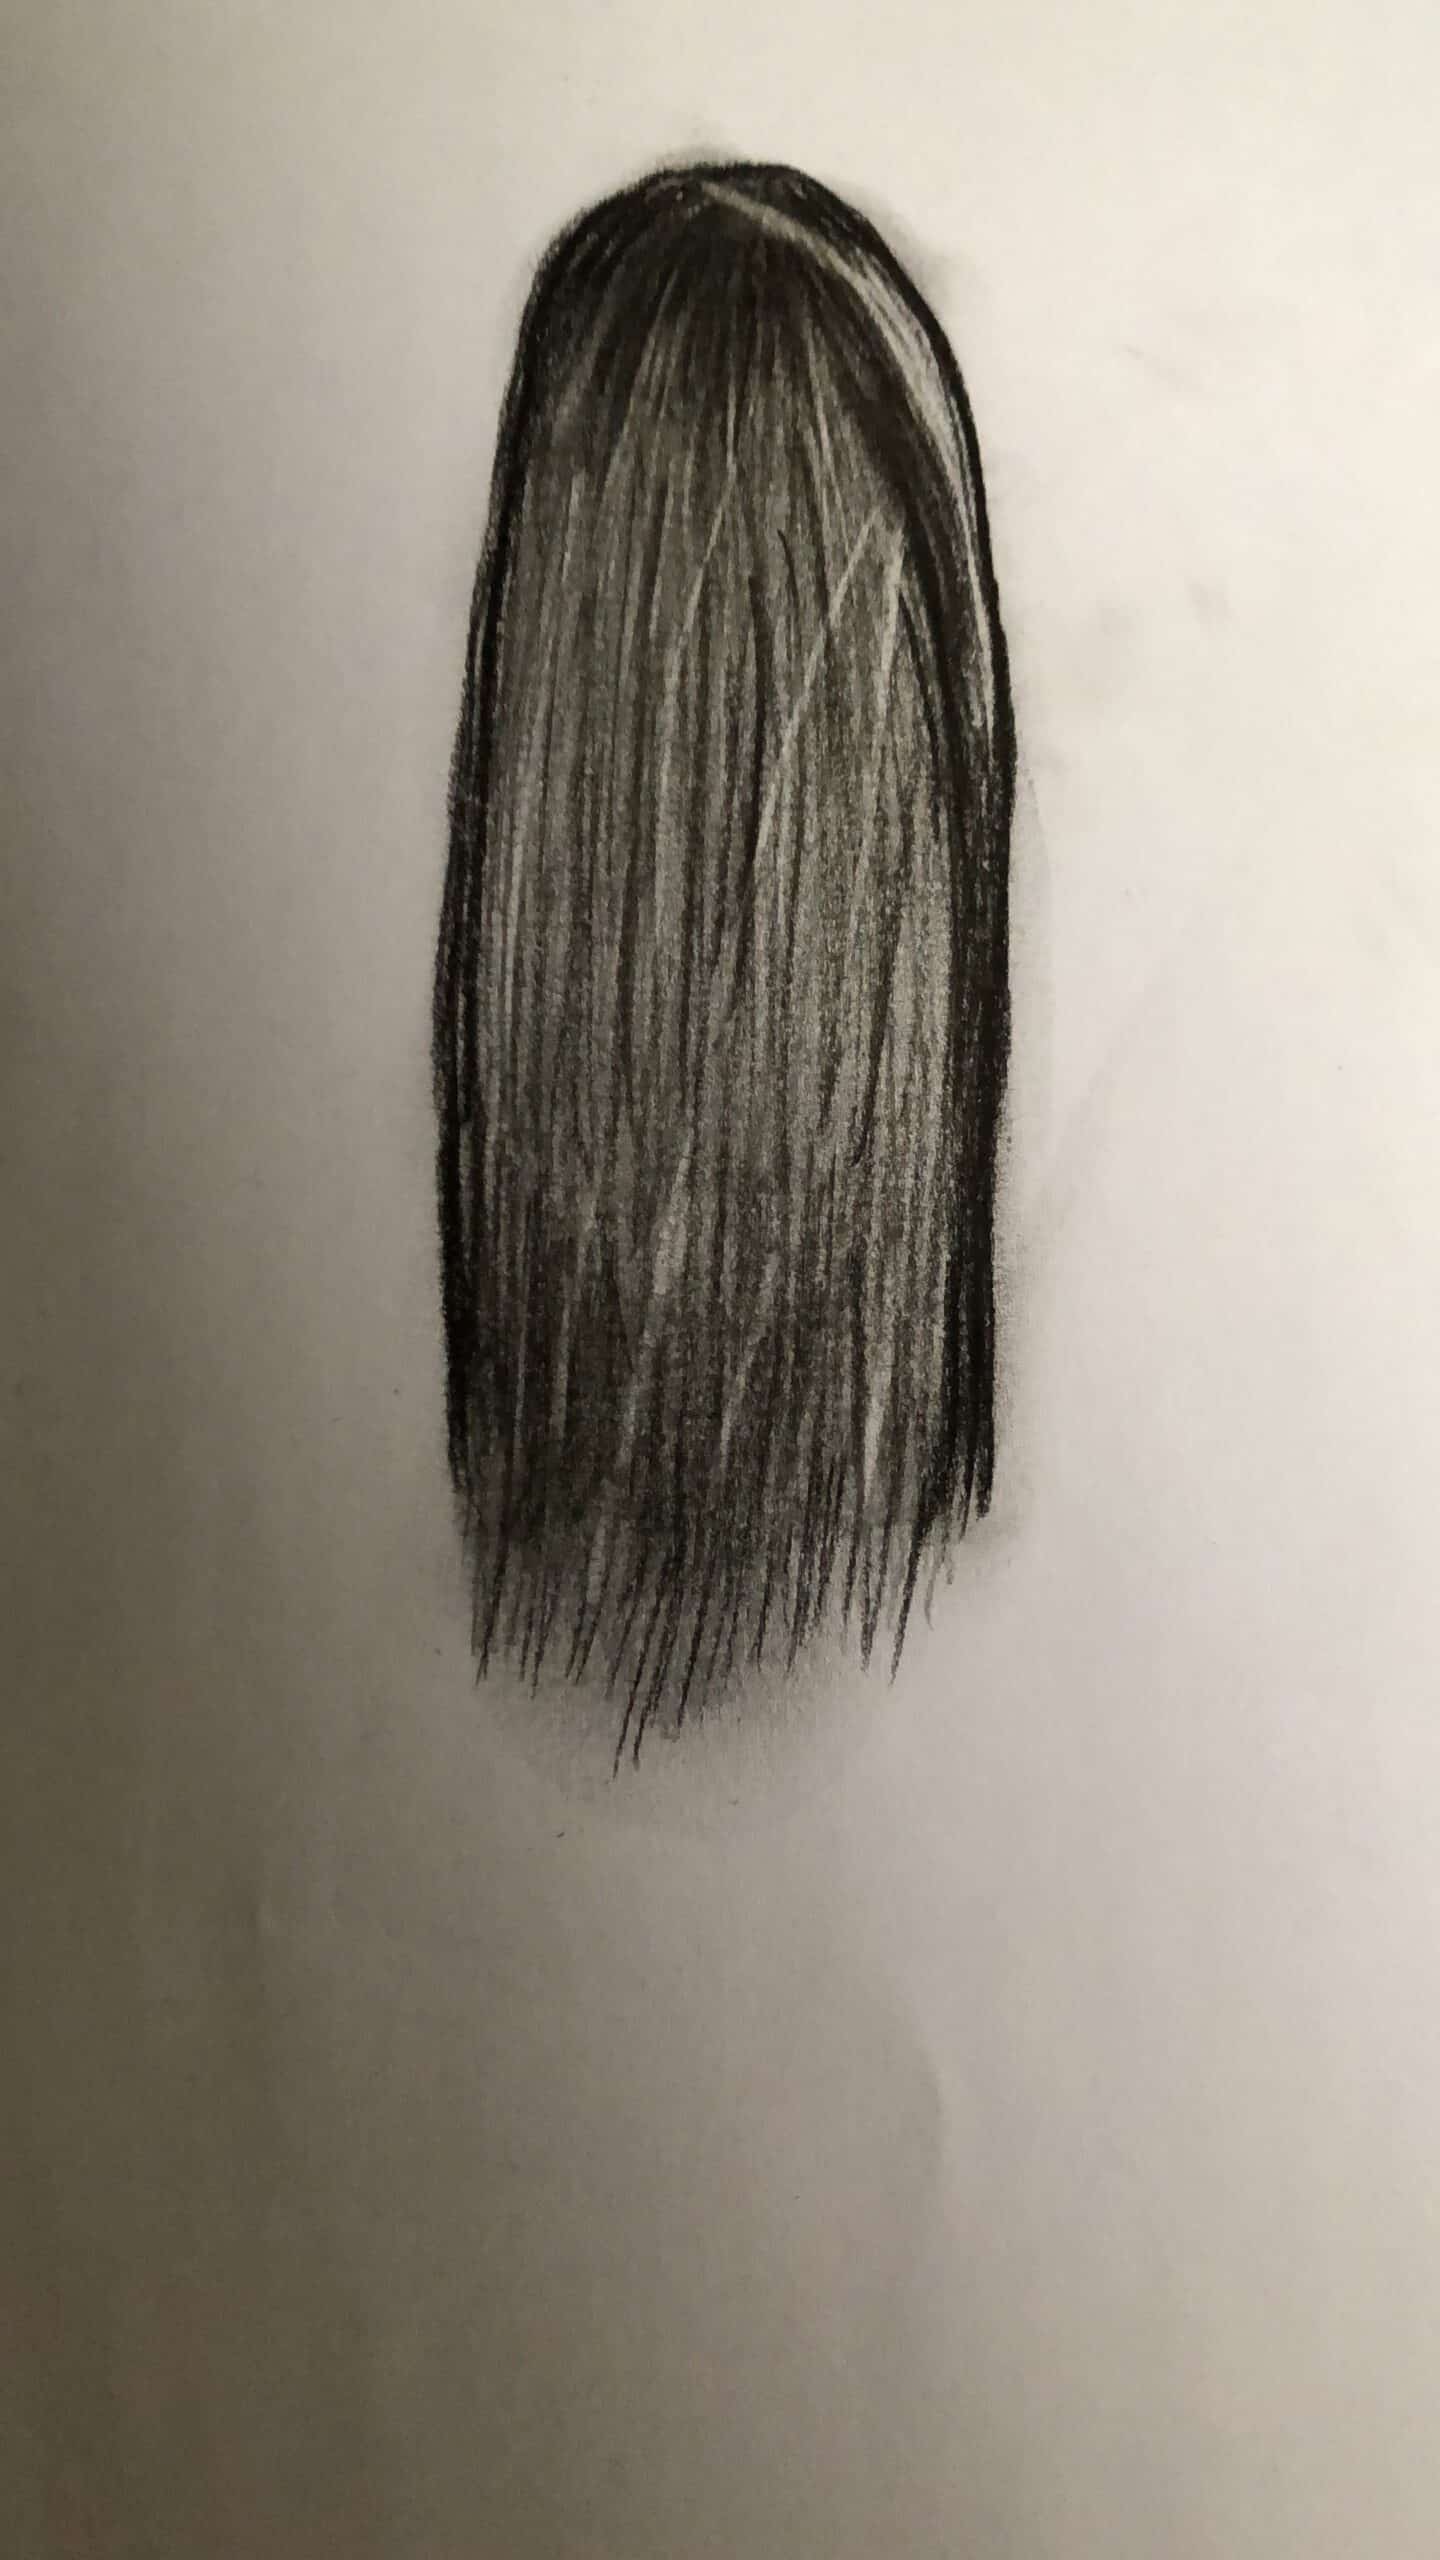 Mein Versuch Haare zu zeichnen